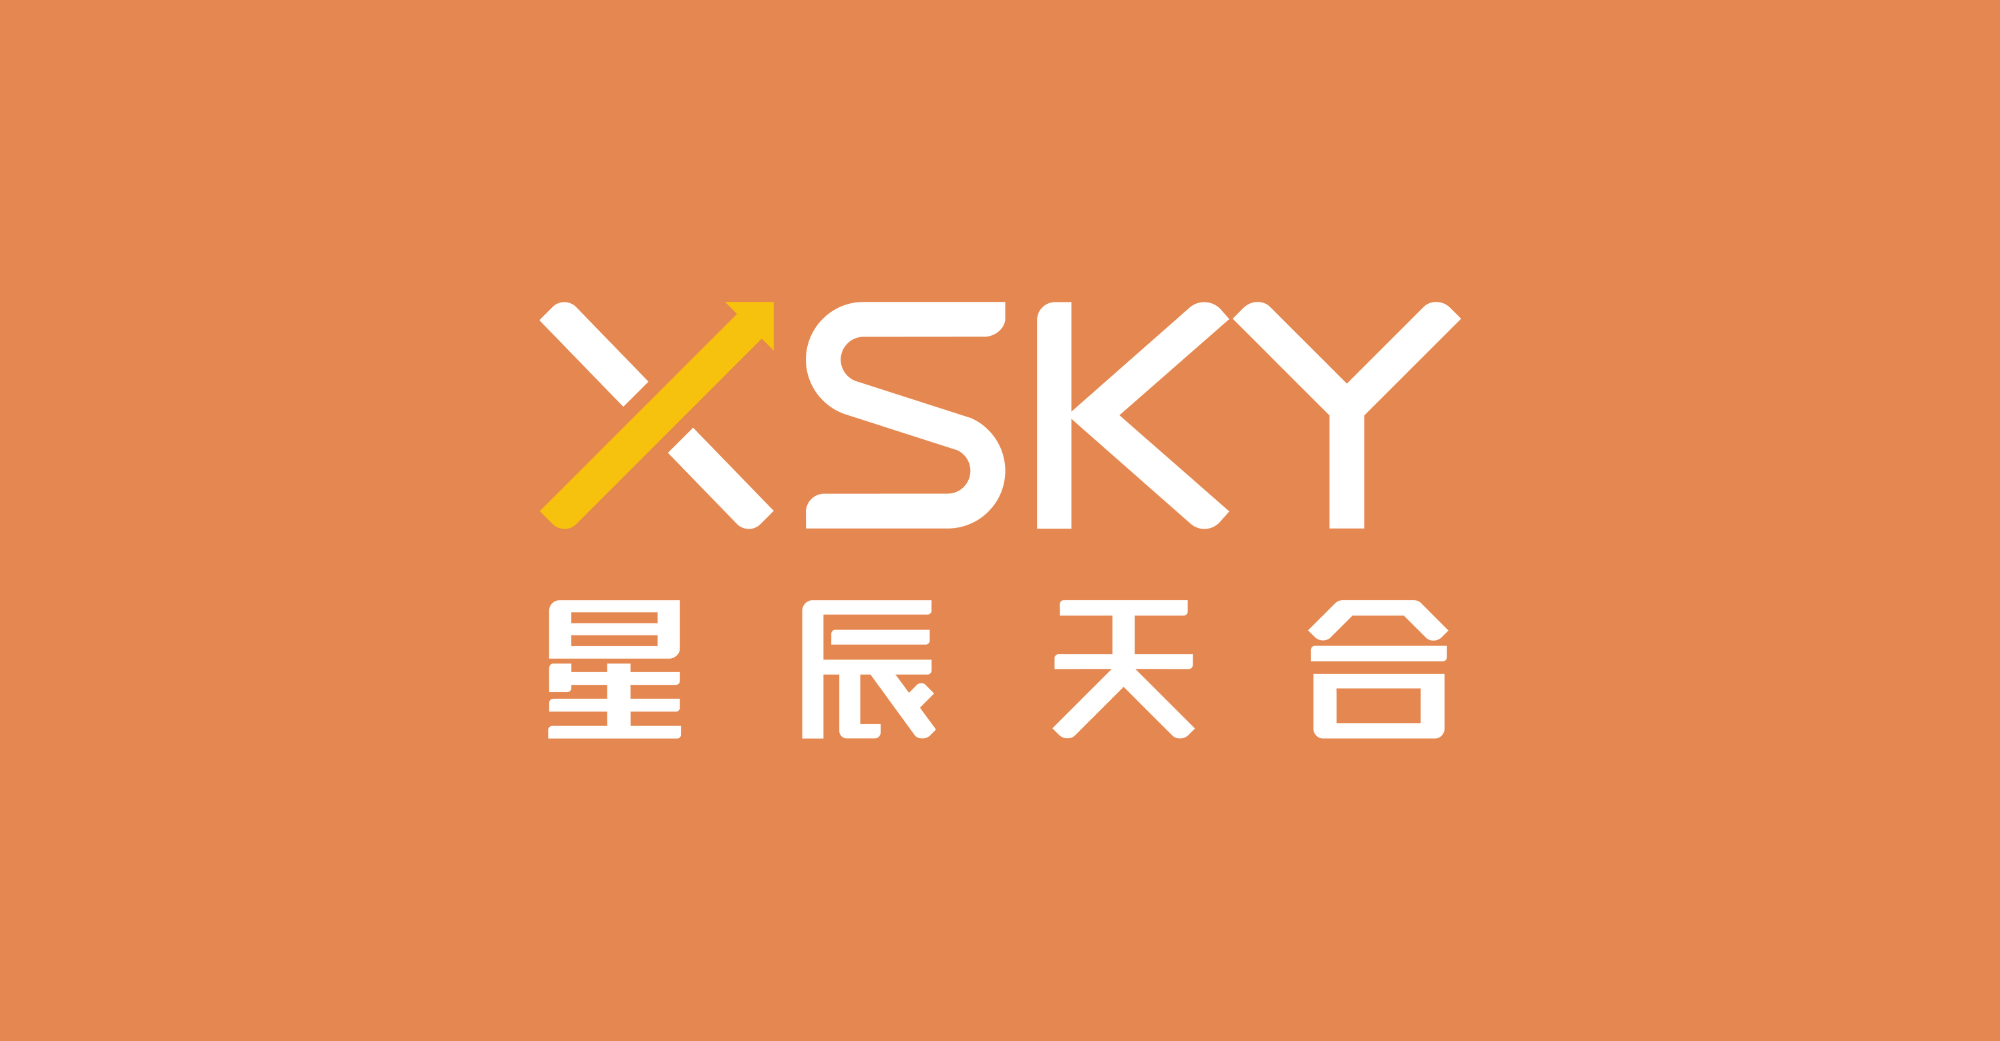 XSky menerima pembiayaan Siri F bernilai AS $62.8 juta, dengan modal kod sumber mengambil bahagian dalam pelaburan